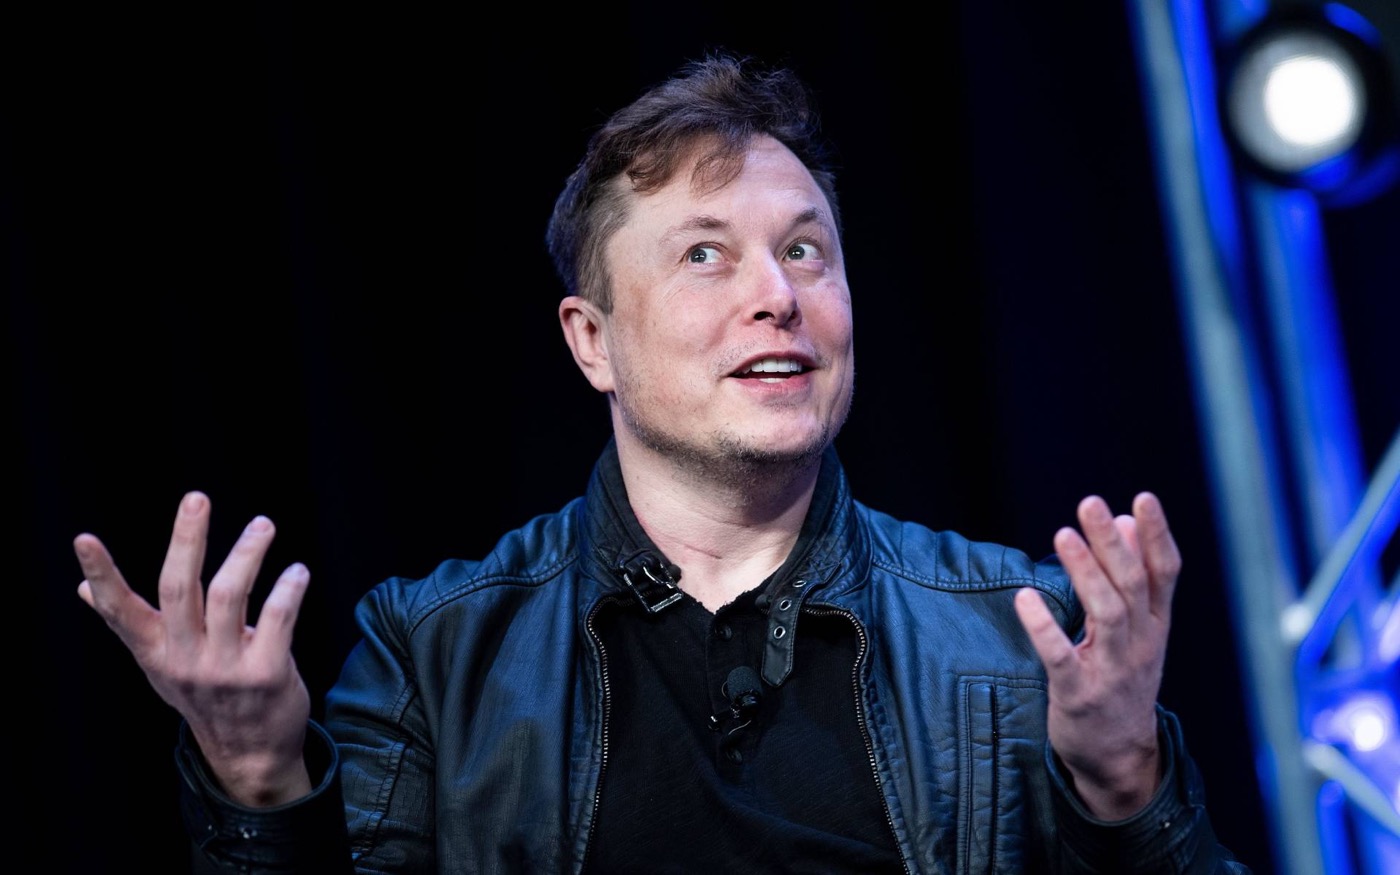 X (Twitter) ralentirait l’accès à certains médias et concurrents moqués par Musk